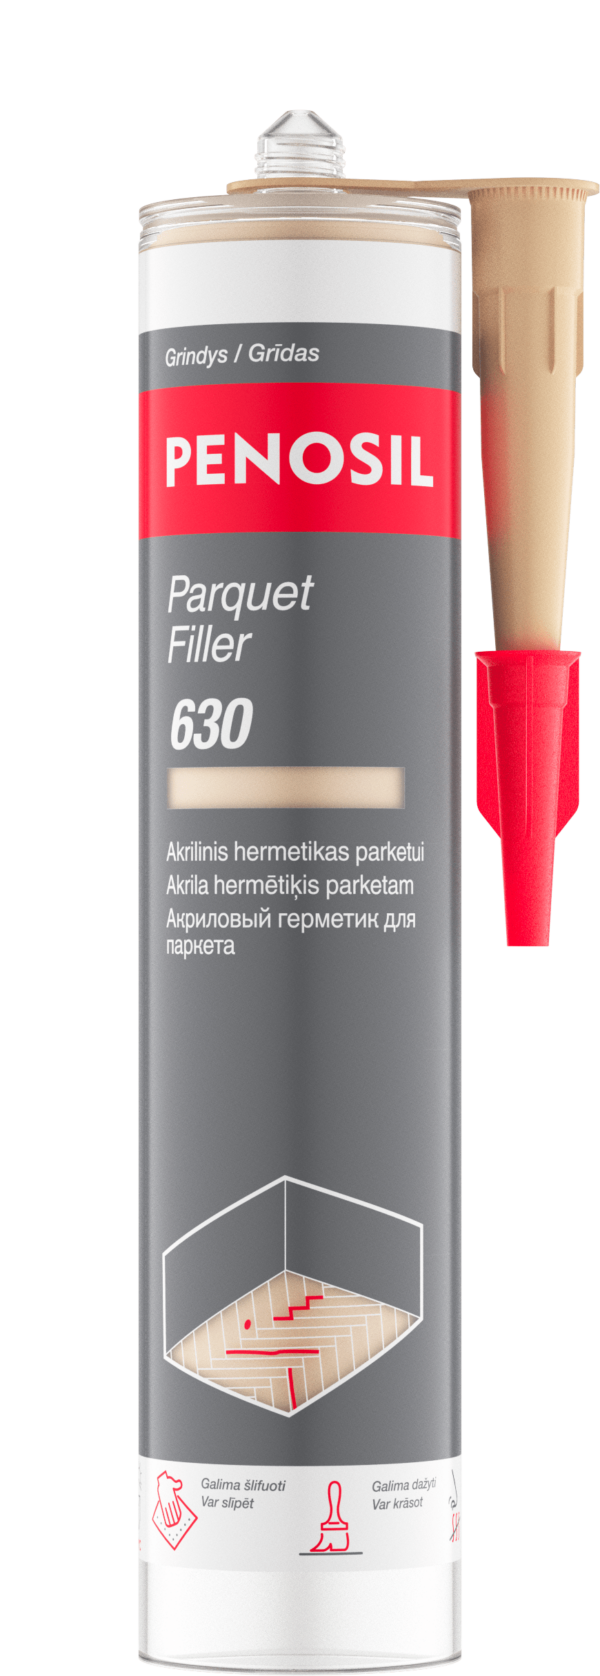 Penosil Parquet Filler 630